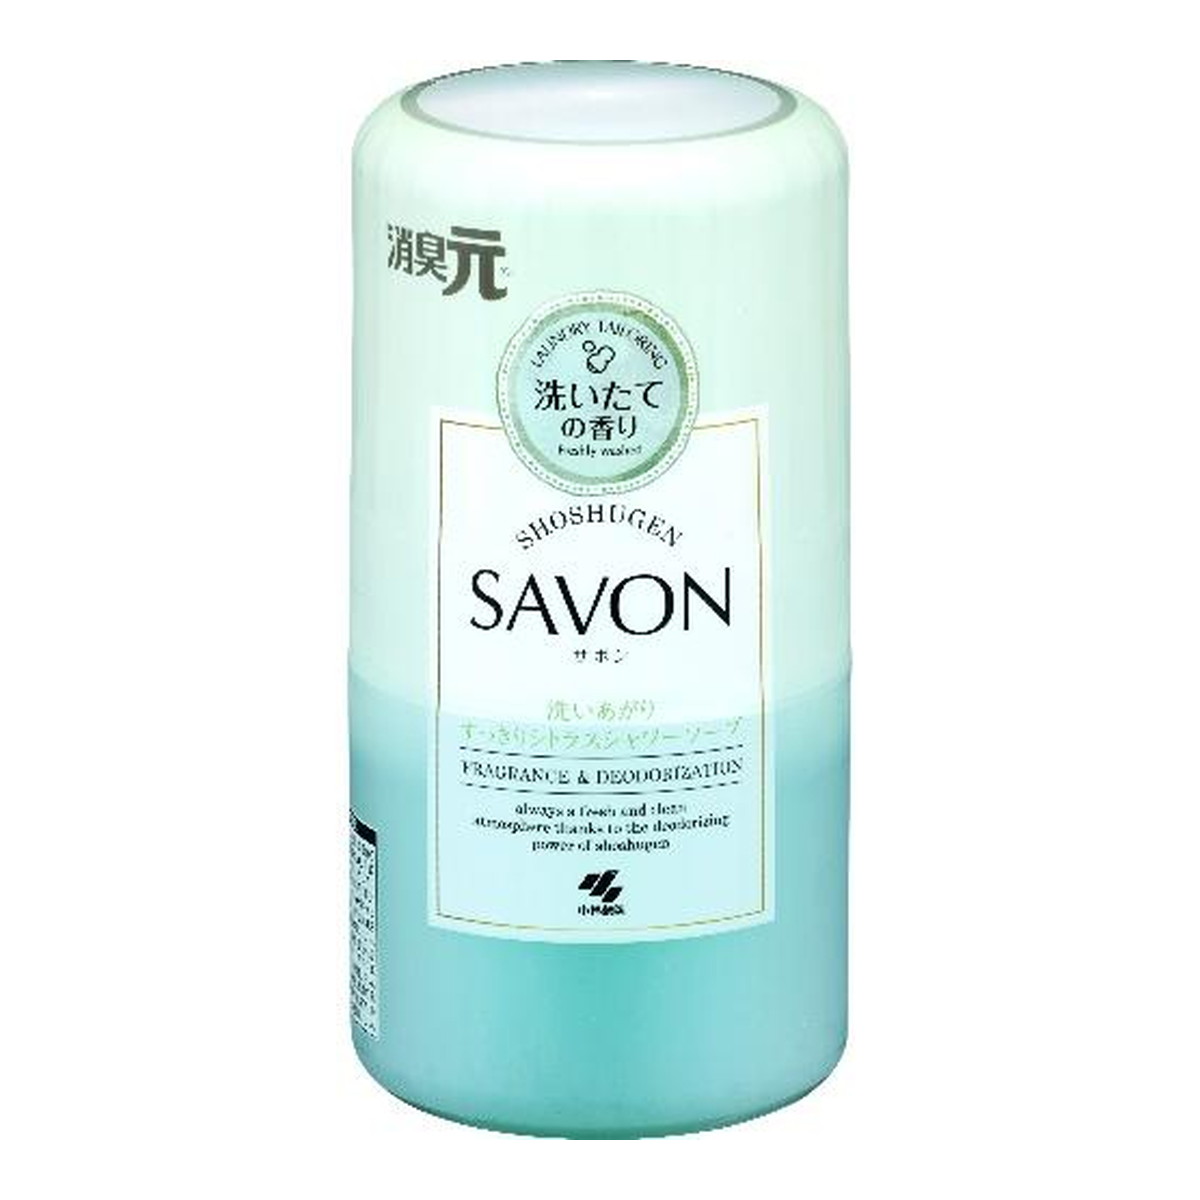 小林製薬 消臭元 SAVON サボン 洗いあがりすっきりシトラス シャワーソープ 400ml 消臭芳香剤